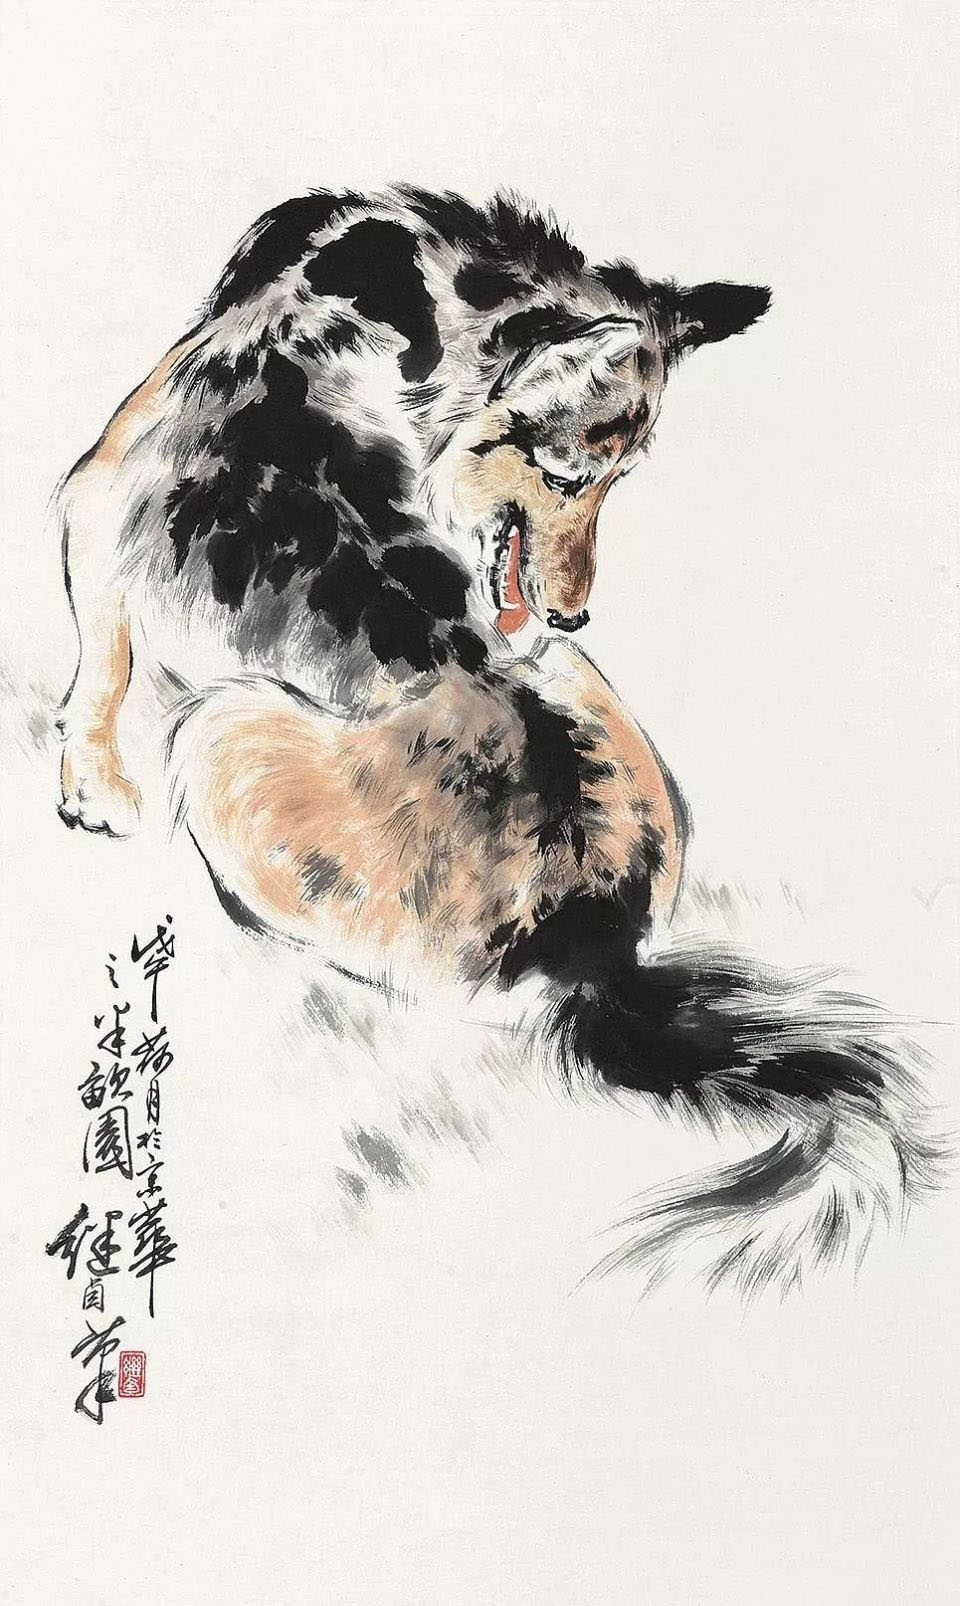 刘继卣画狗，拟人化的写实画法